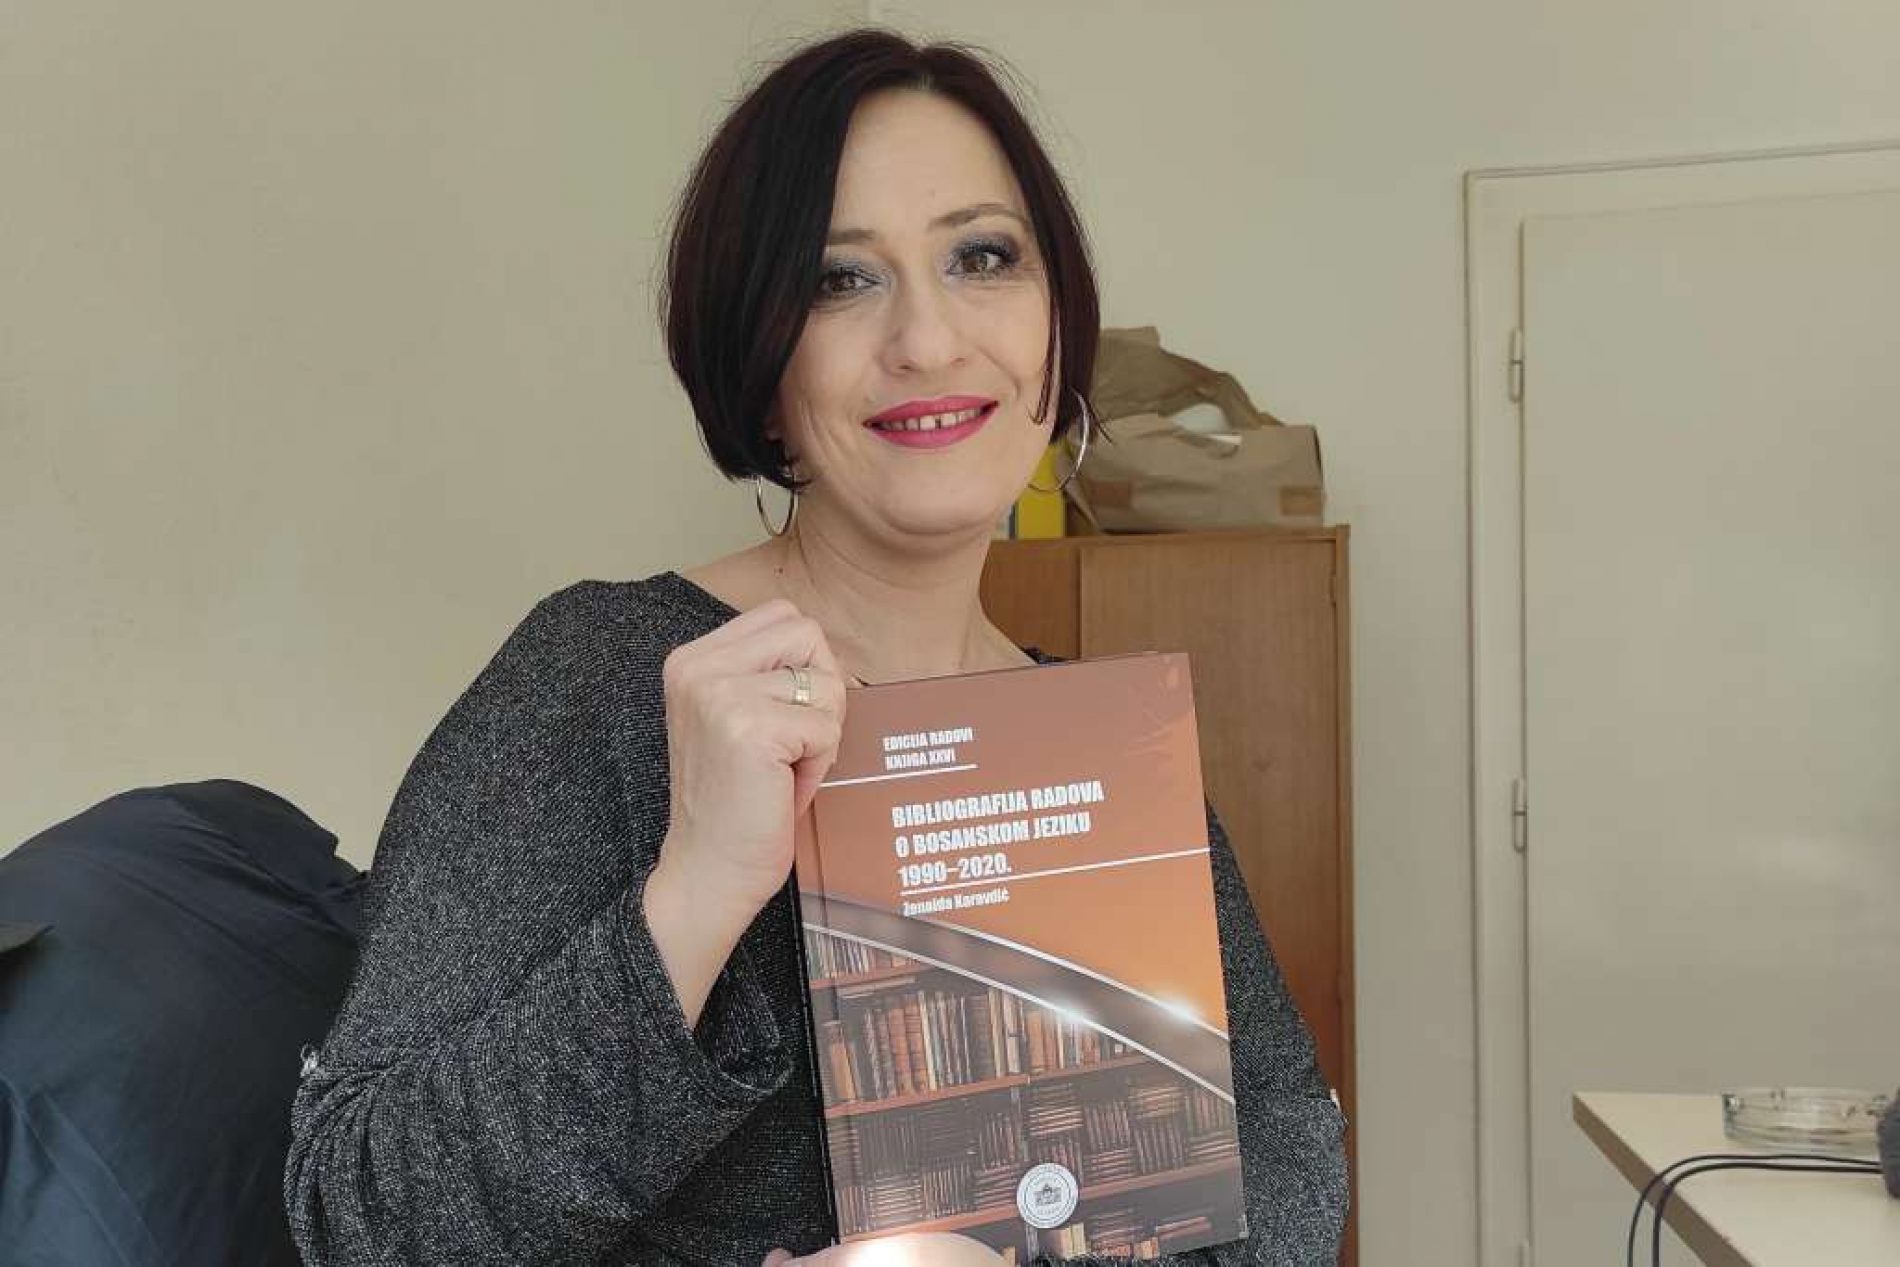 Objavljena ‘Bibliografija radova o bosanskom jeziku 1990-2020.’ Zenaide Karavdić